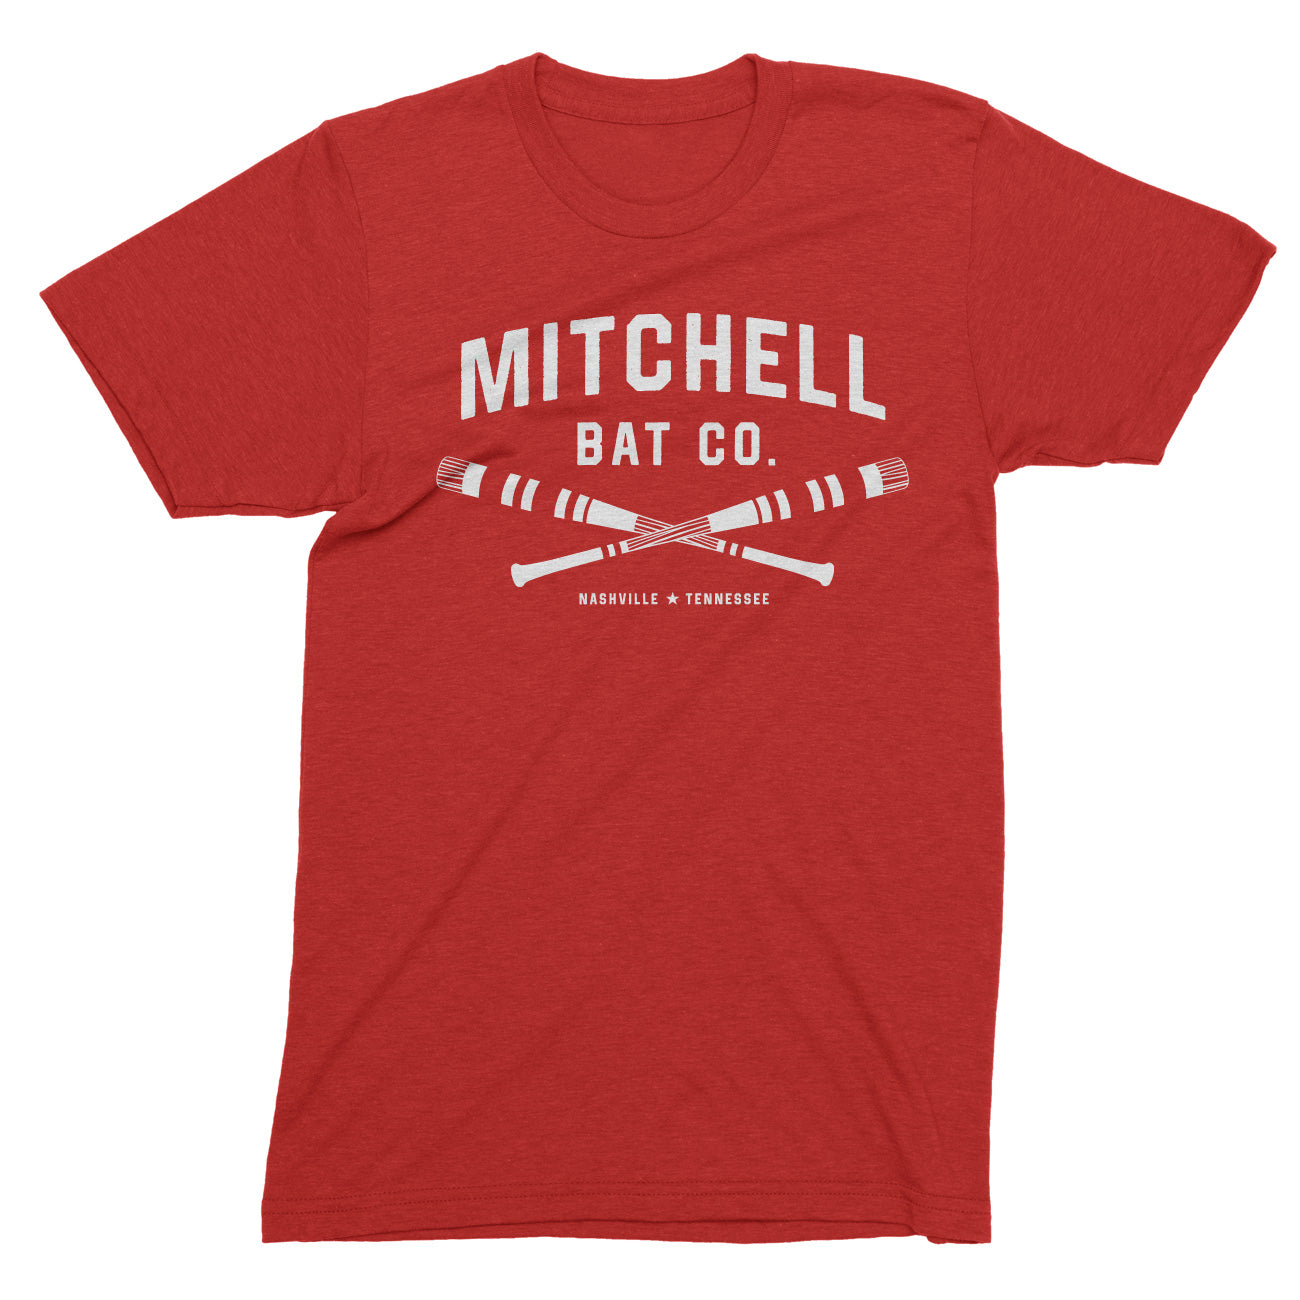 Cross bat Mitchell Bat Co. short sleeve tee (red)